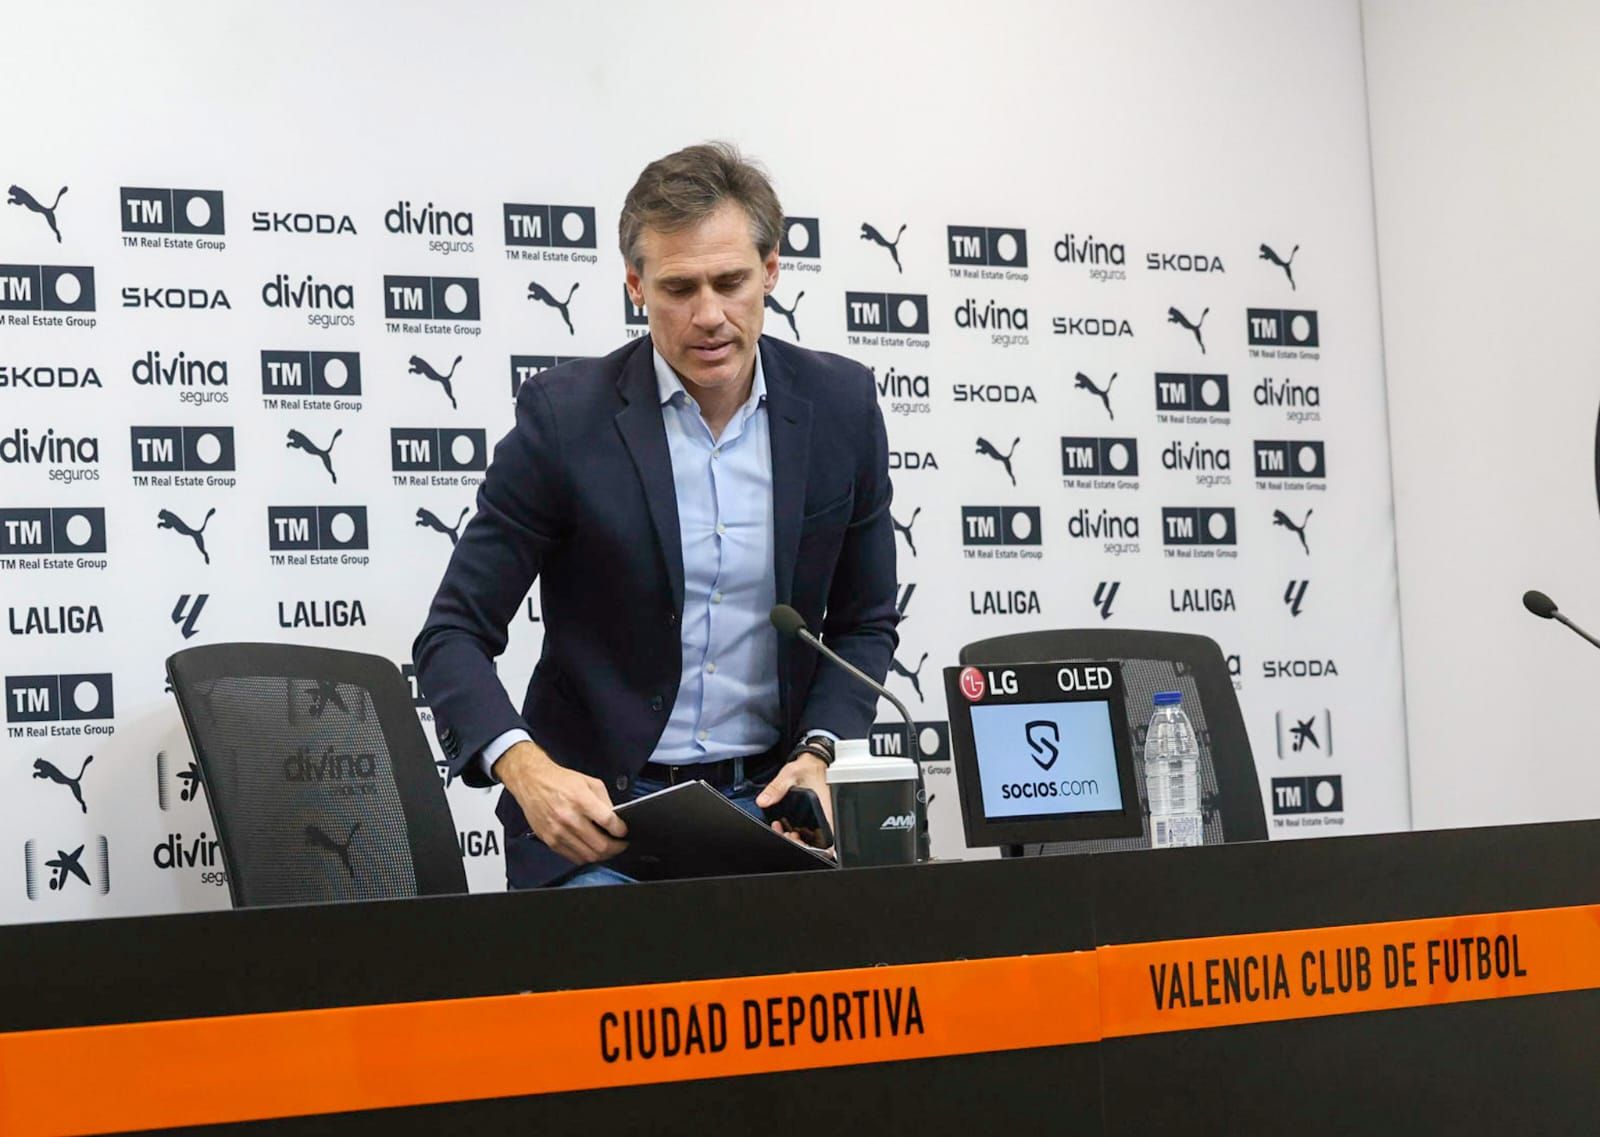 Peter Federico, presentado como nuevo jugador del Valencia CF